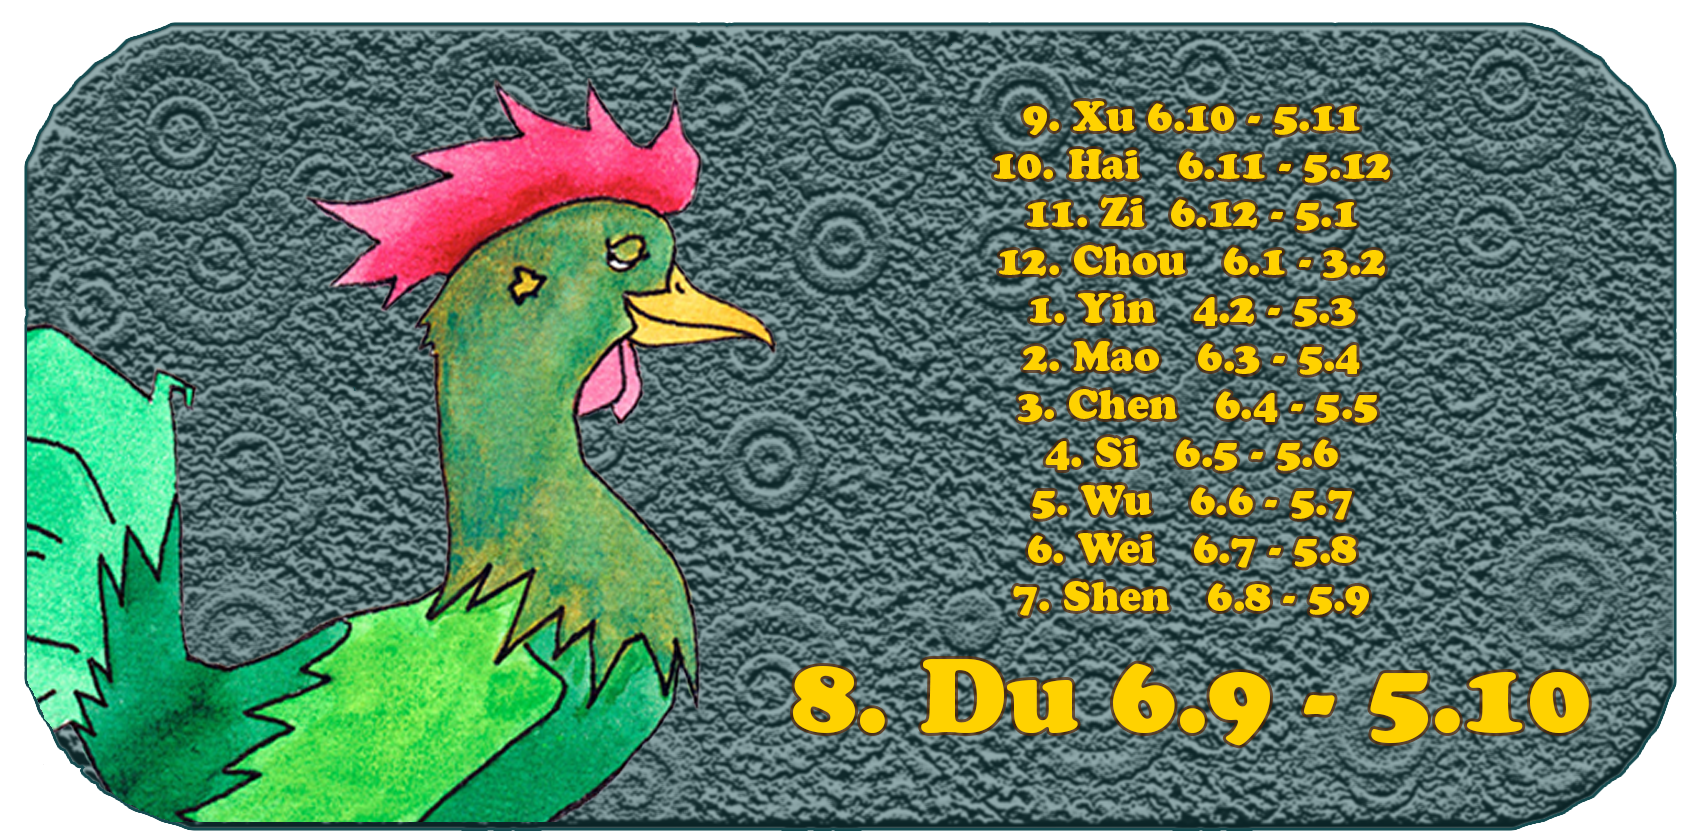 Zodíaco chino | Los doce animales chinos | Gallo, septiembre, mes 8, Du